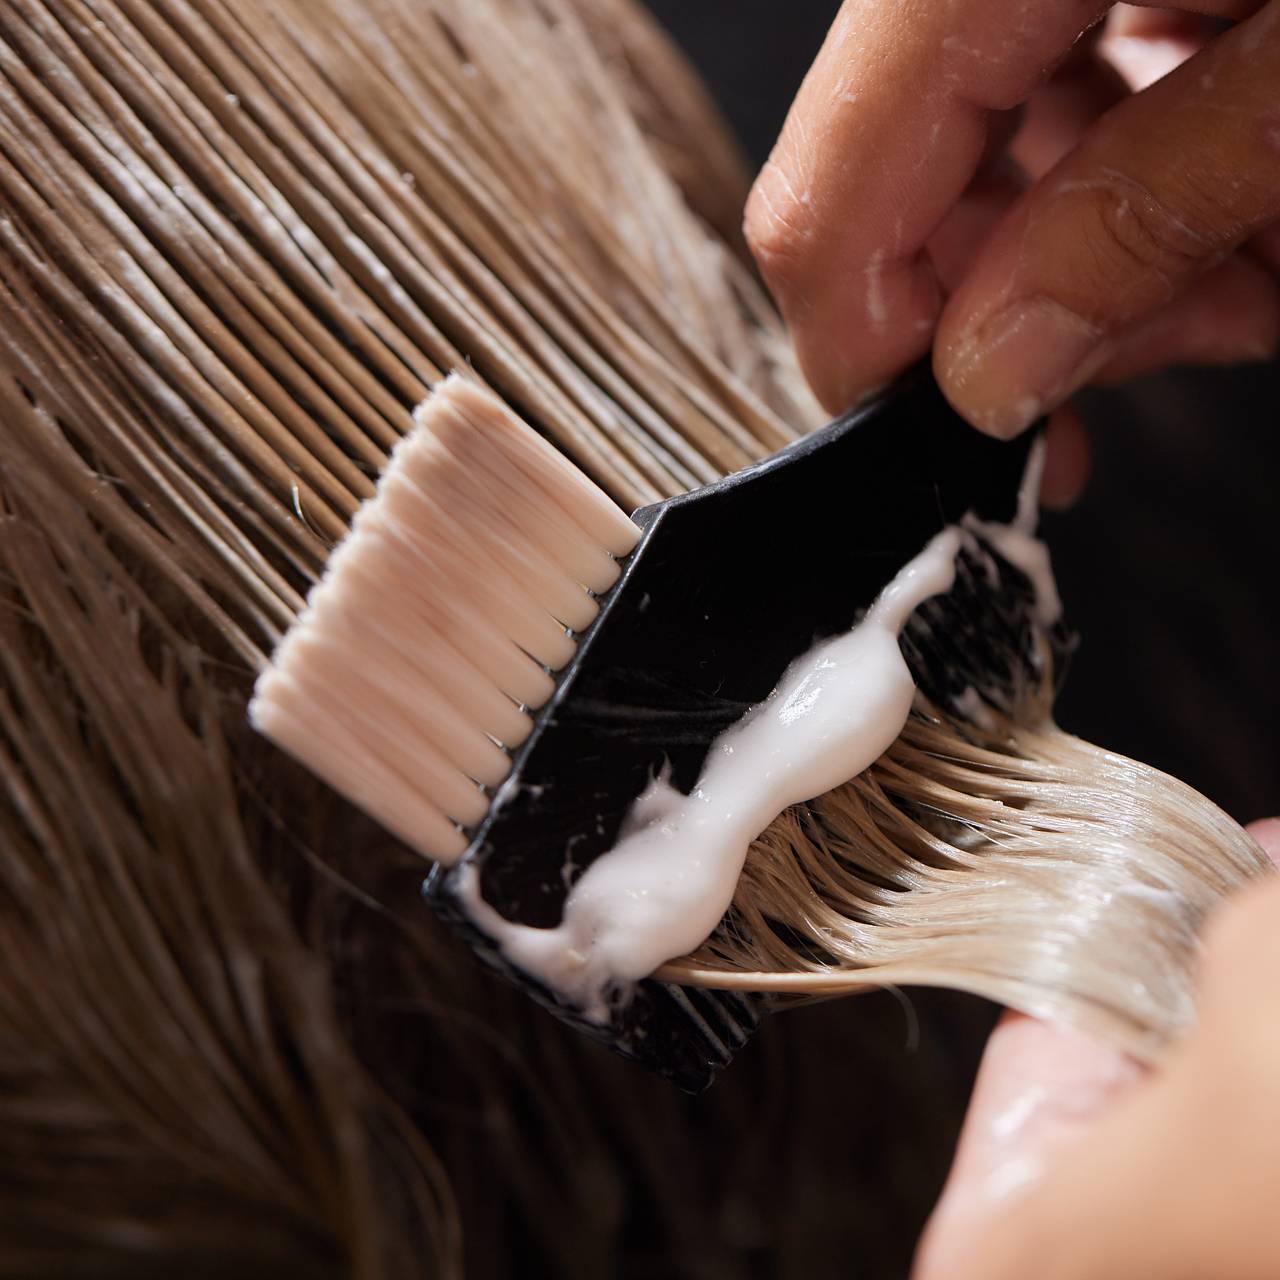 Как обесцветить волосы пудрой? - Блог KARAMELKASHOP